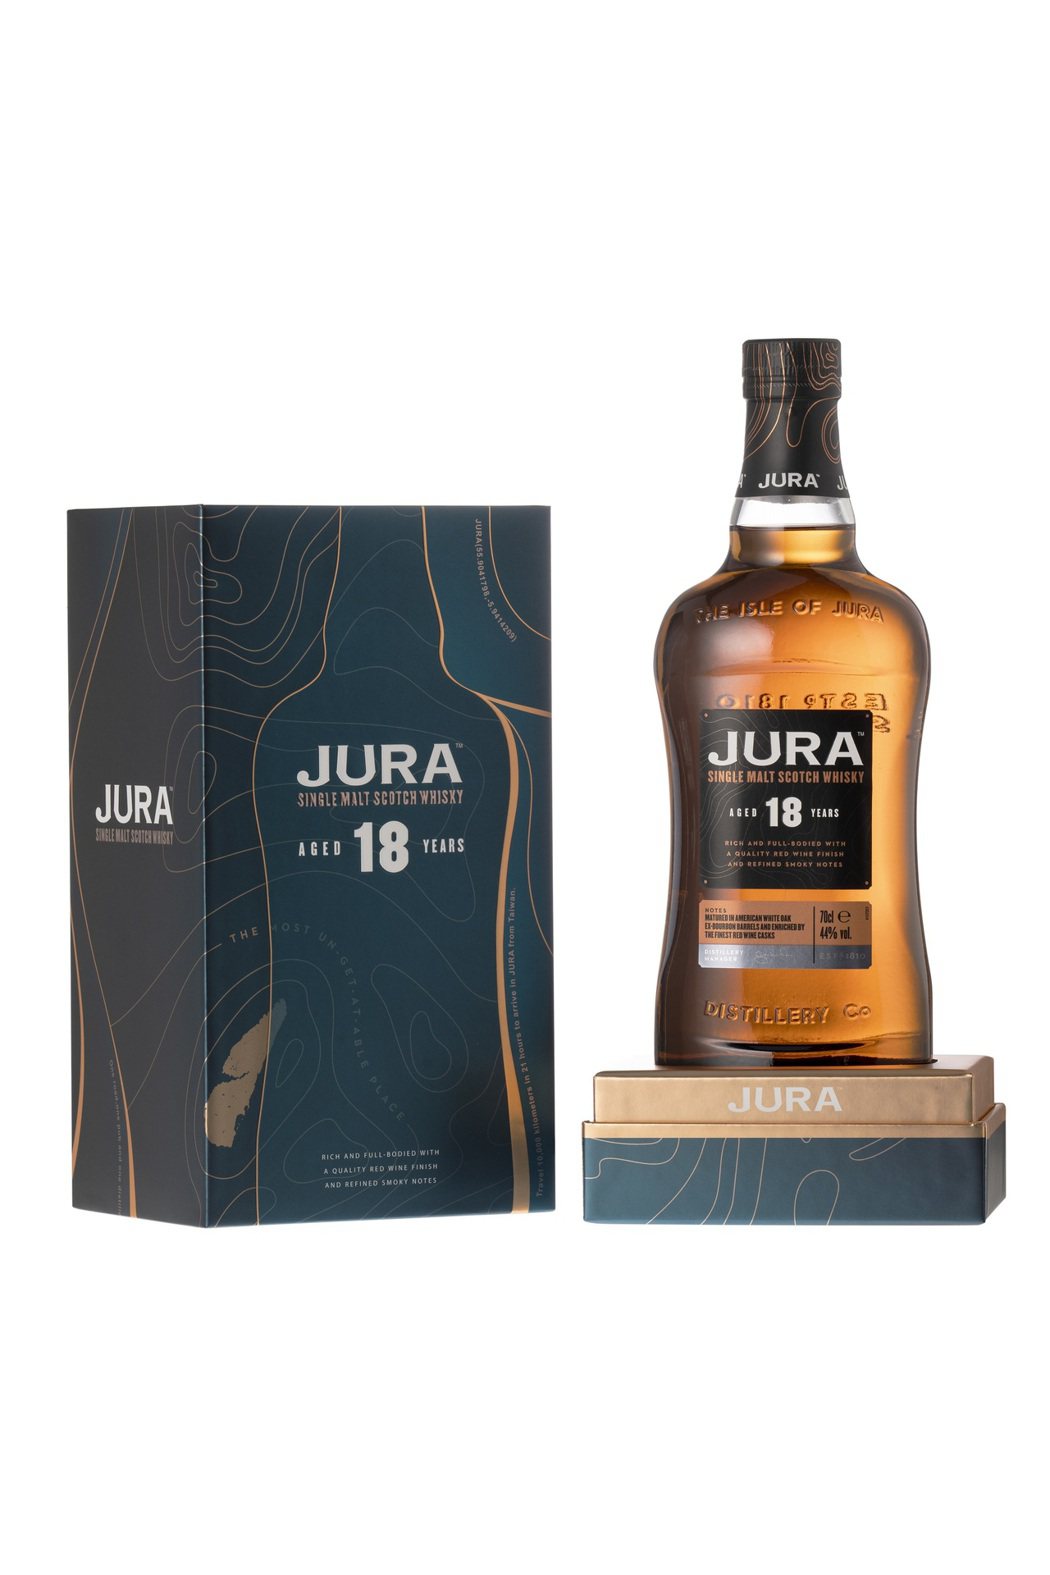 吉拉18年單一麥芽蘇格蘭威士忌容量：700ml酒精濃度：44%色澤：...